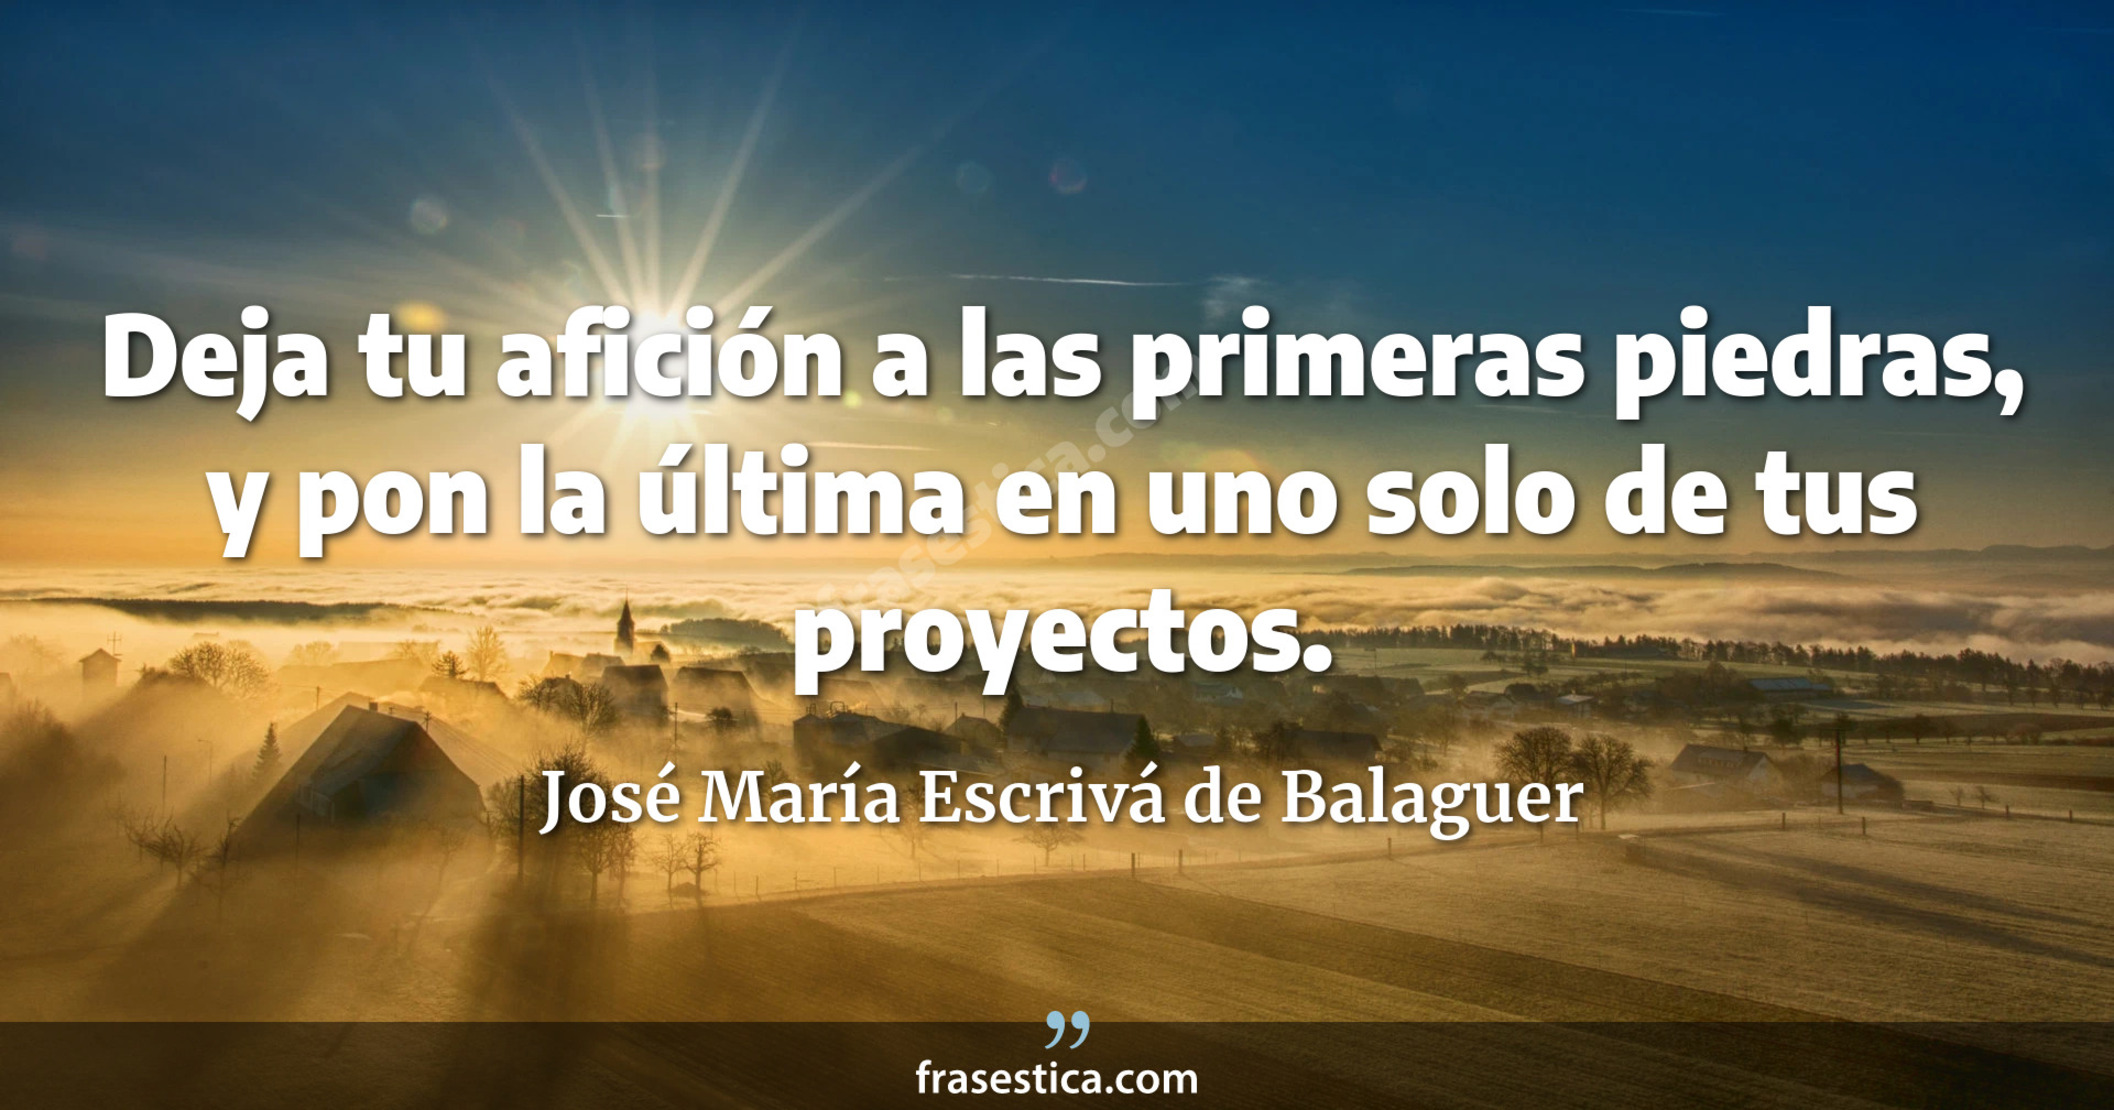 Deja tu afición a las primeras piedras, y pon la última en uno solo de tus proyectos. - José María Escrivá de Balaguer